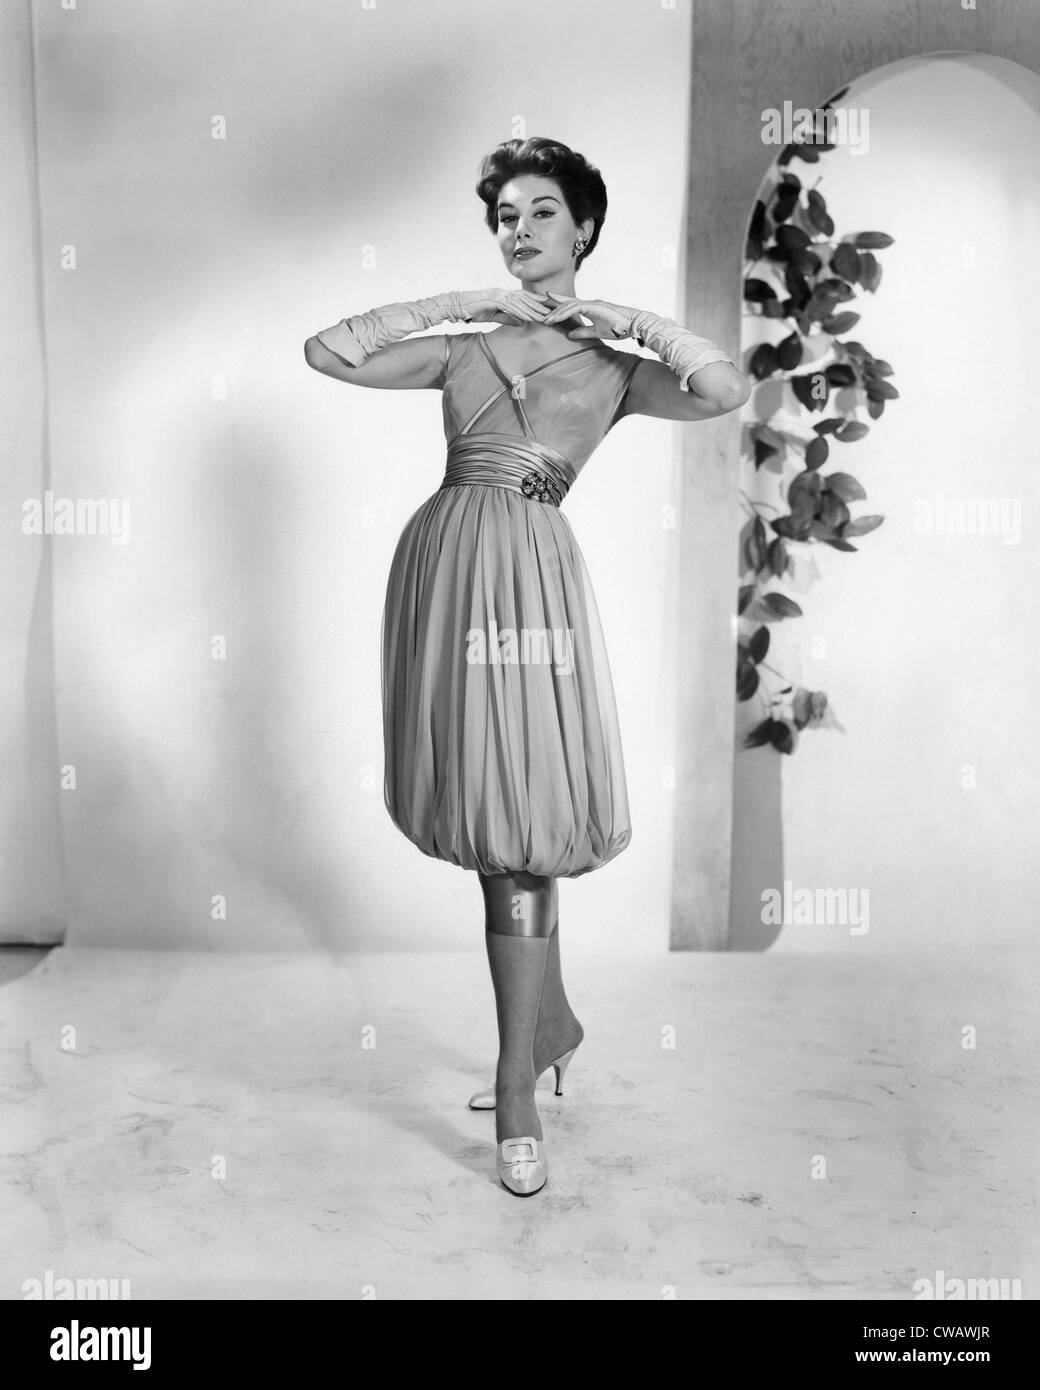 Eine Frau, die Modellierung der 1950er Jahre Mode, ca. 1956. Foto: Courtesy: CSU Archive/Everett Collection Stockfoto